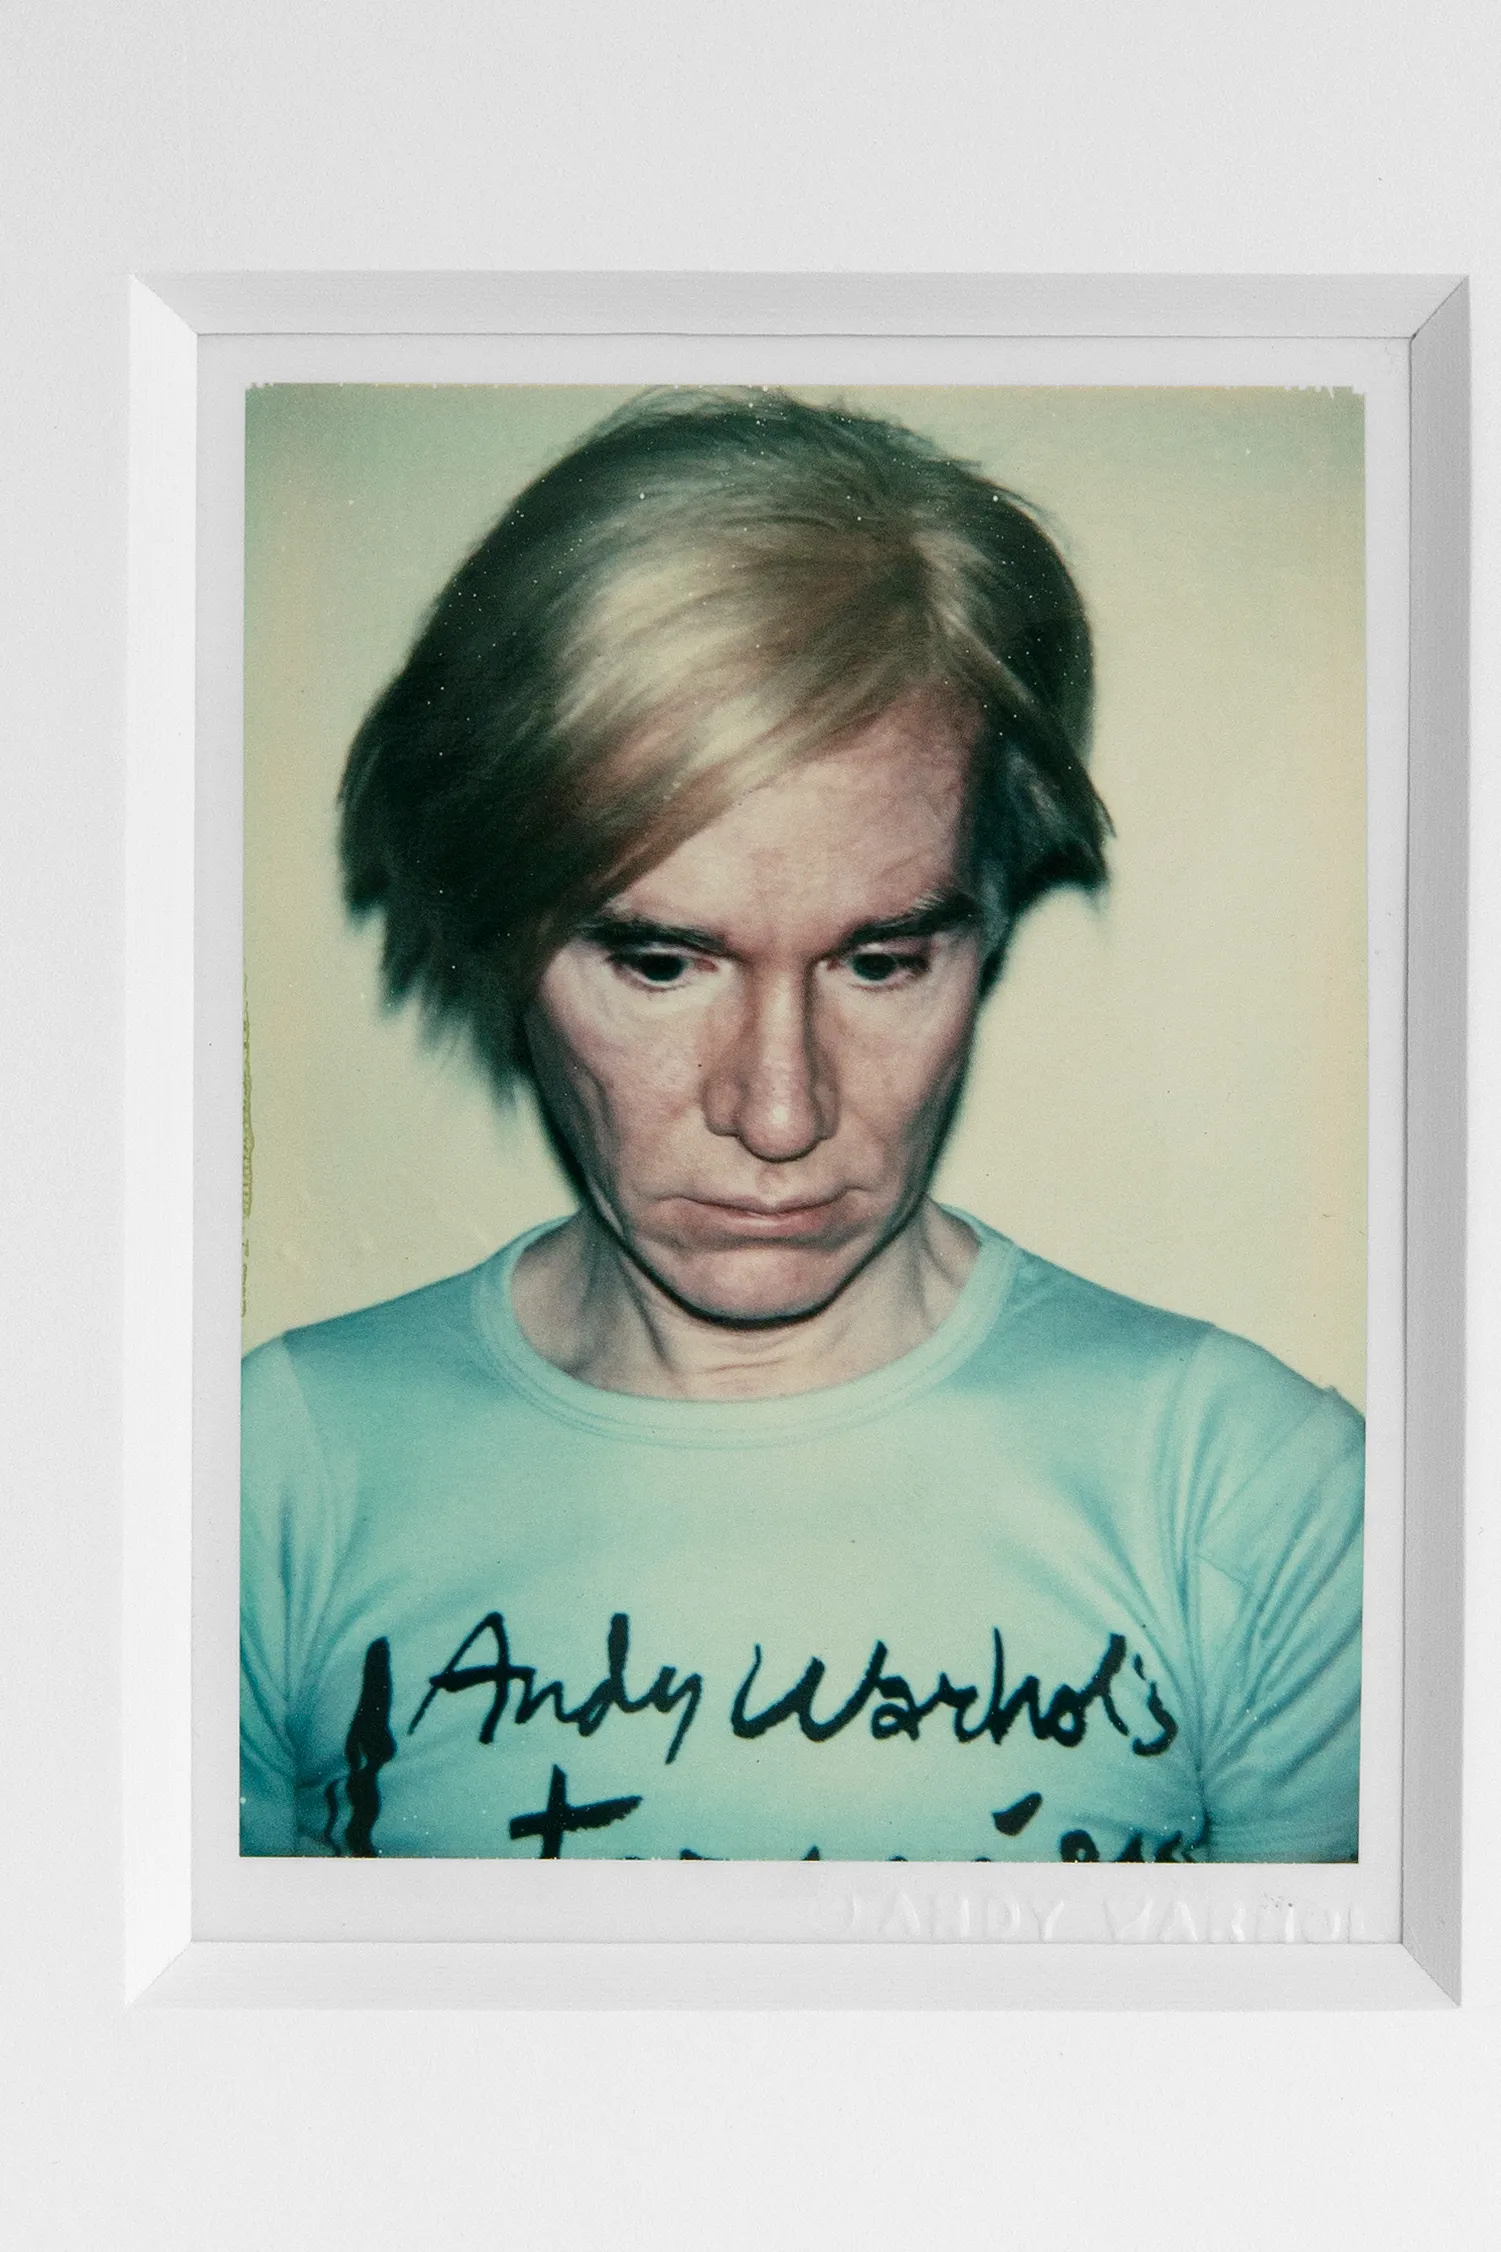 autorretrato de Andy Warhol, em foto polaroid. Em um fundo branco, Andy direciona seu olhar para baixo. Seus olhos são escuros, suas sobrancelhas pretas. Usa uma peruca loira lisa e penteada. Seu rosto é envelhecido. Veste uma camiseta azul clara, onde é possível se ler ‘Andy Warhol’, em letras cursivas pretas. As bordas da fotografia são brancas